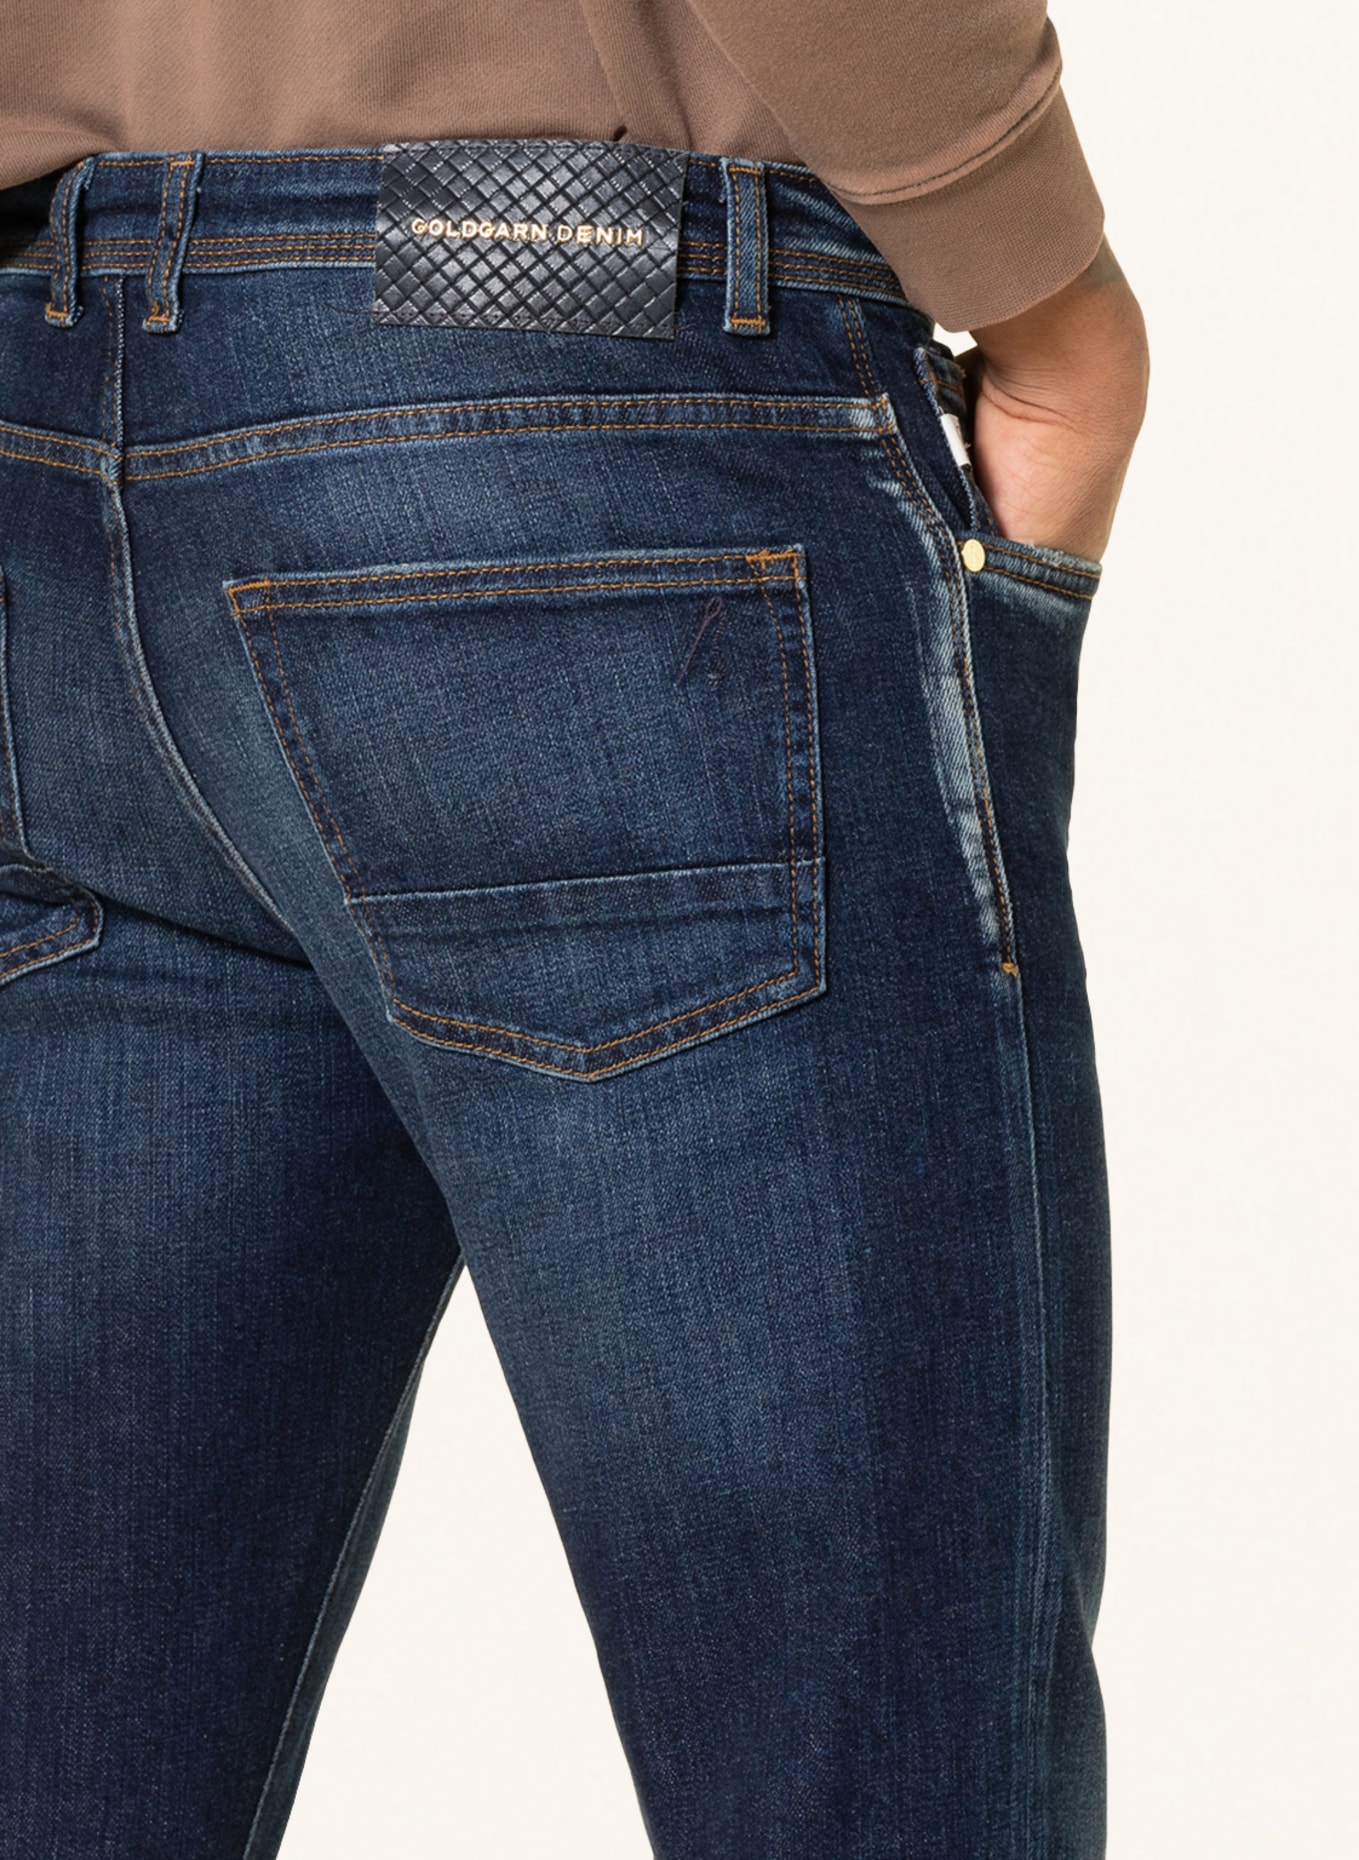 GOLDGARN DENIM Jeans U2 slim fit, Color: 1030 DARK BLUE (Image 5)